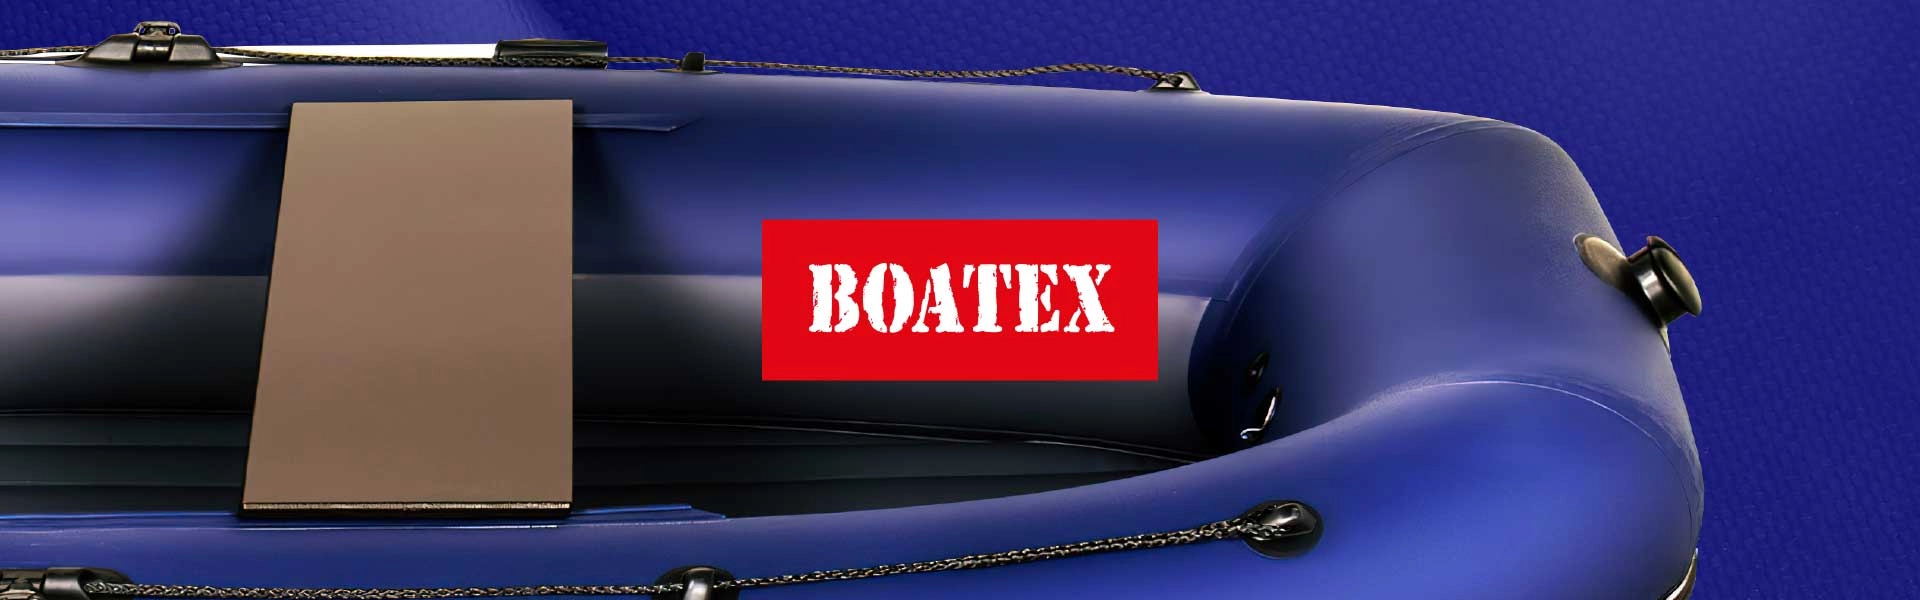 BOATEX 1100 г/м.кв синего цвета – 7,12 $ за м.кв